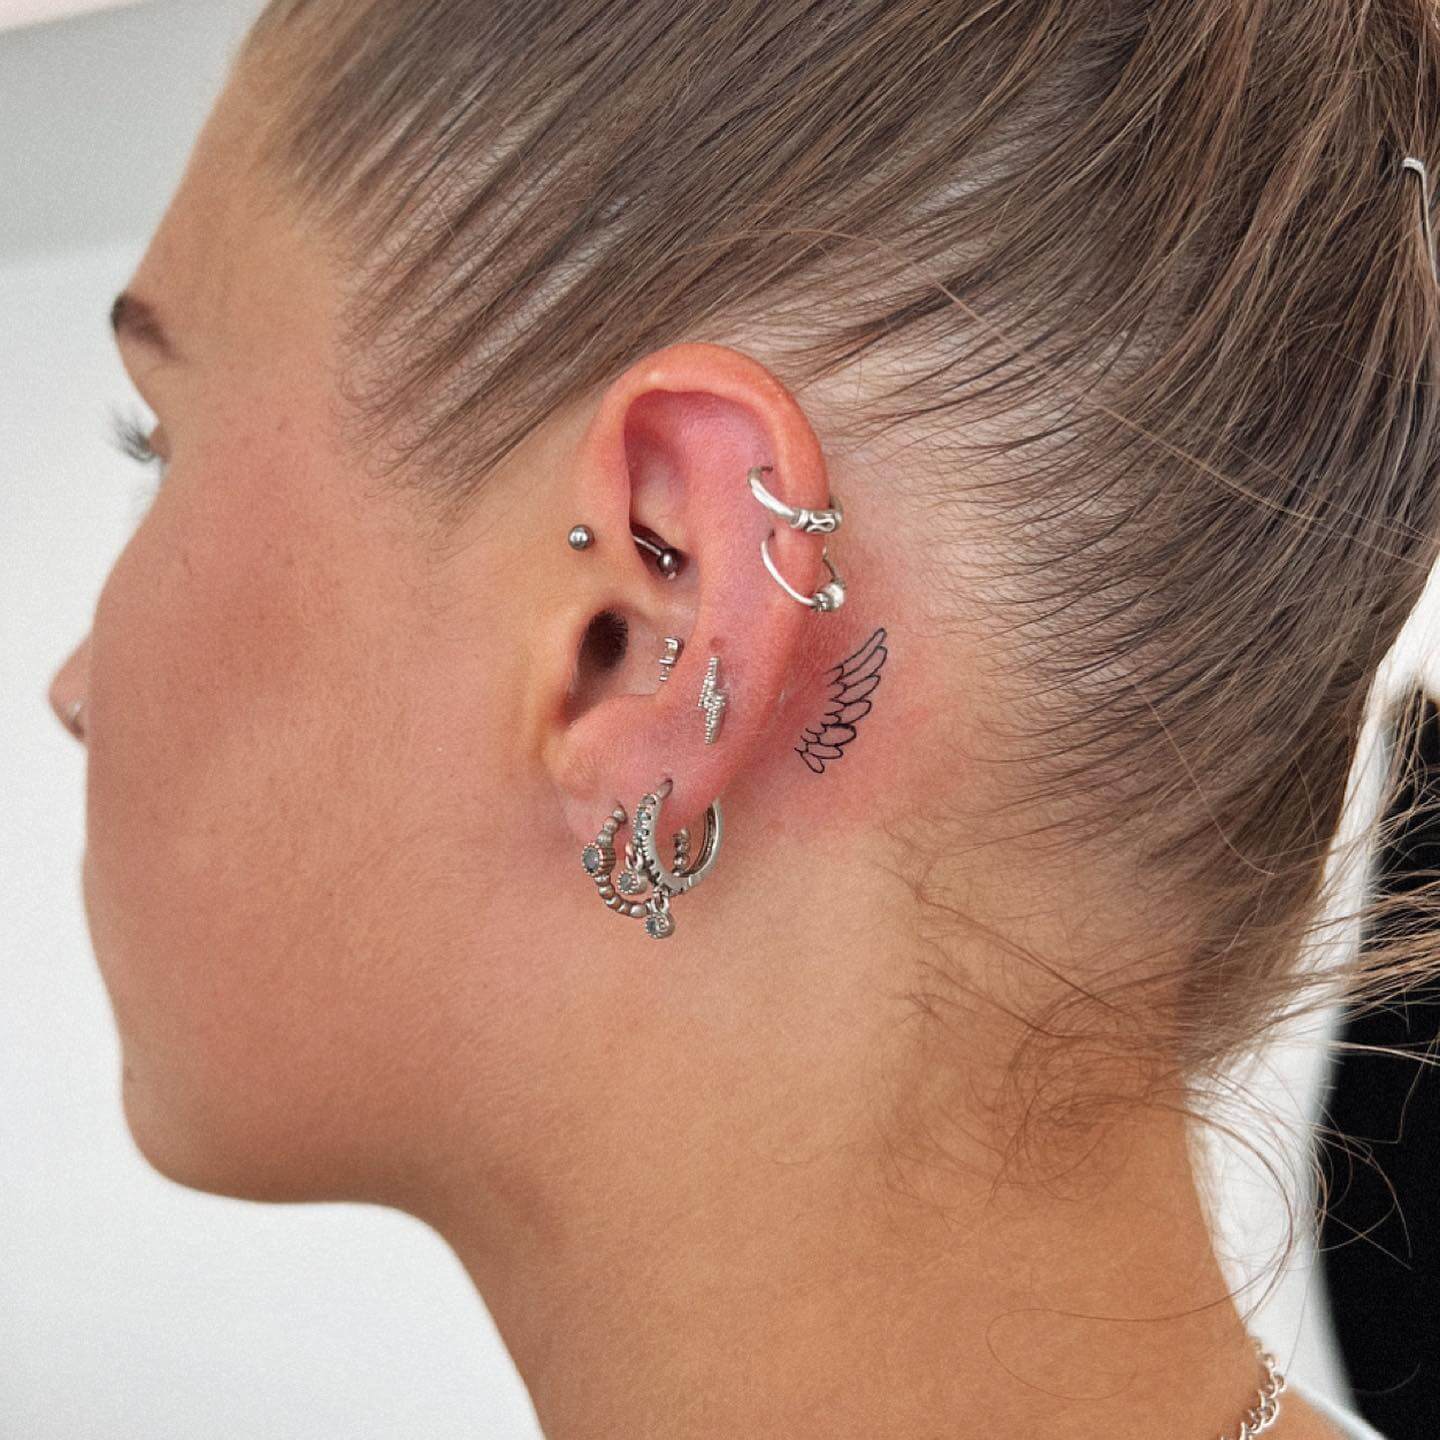 Minimalist Tattoos Behind Ear